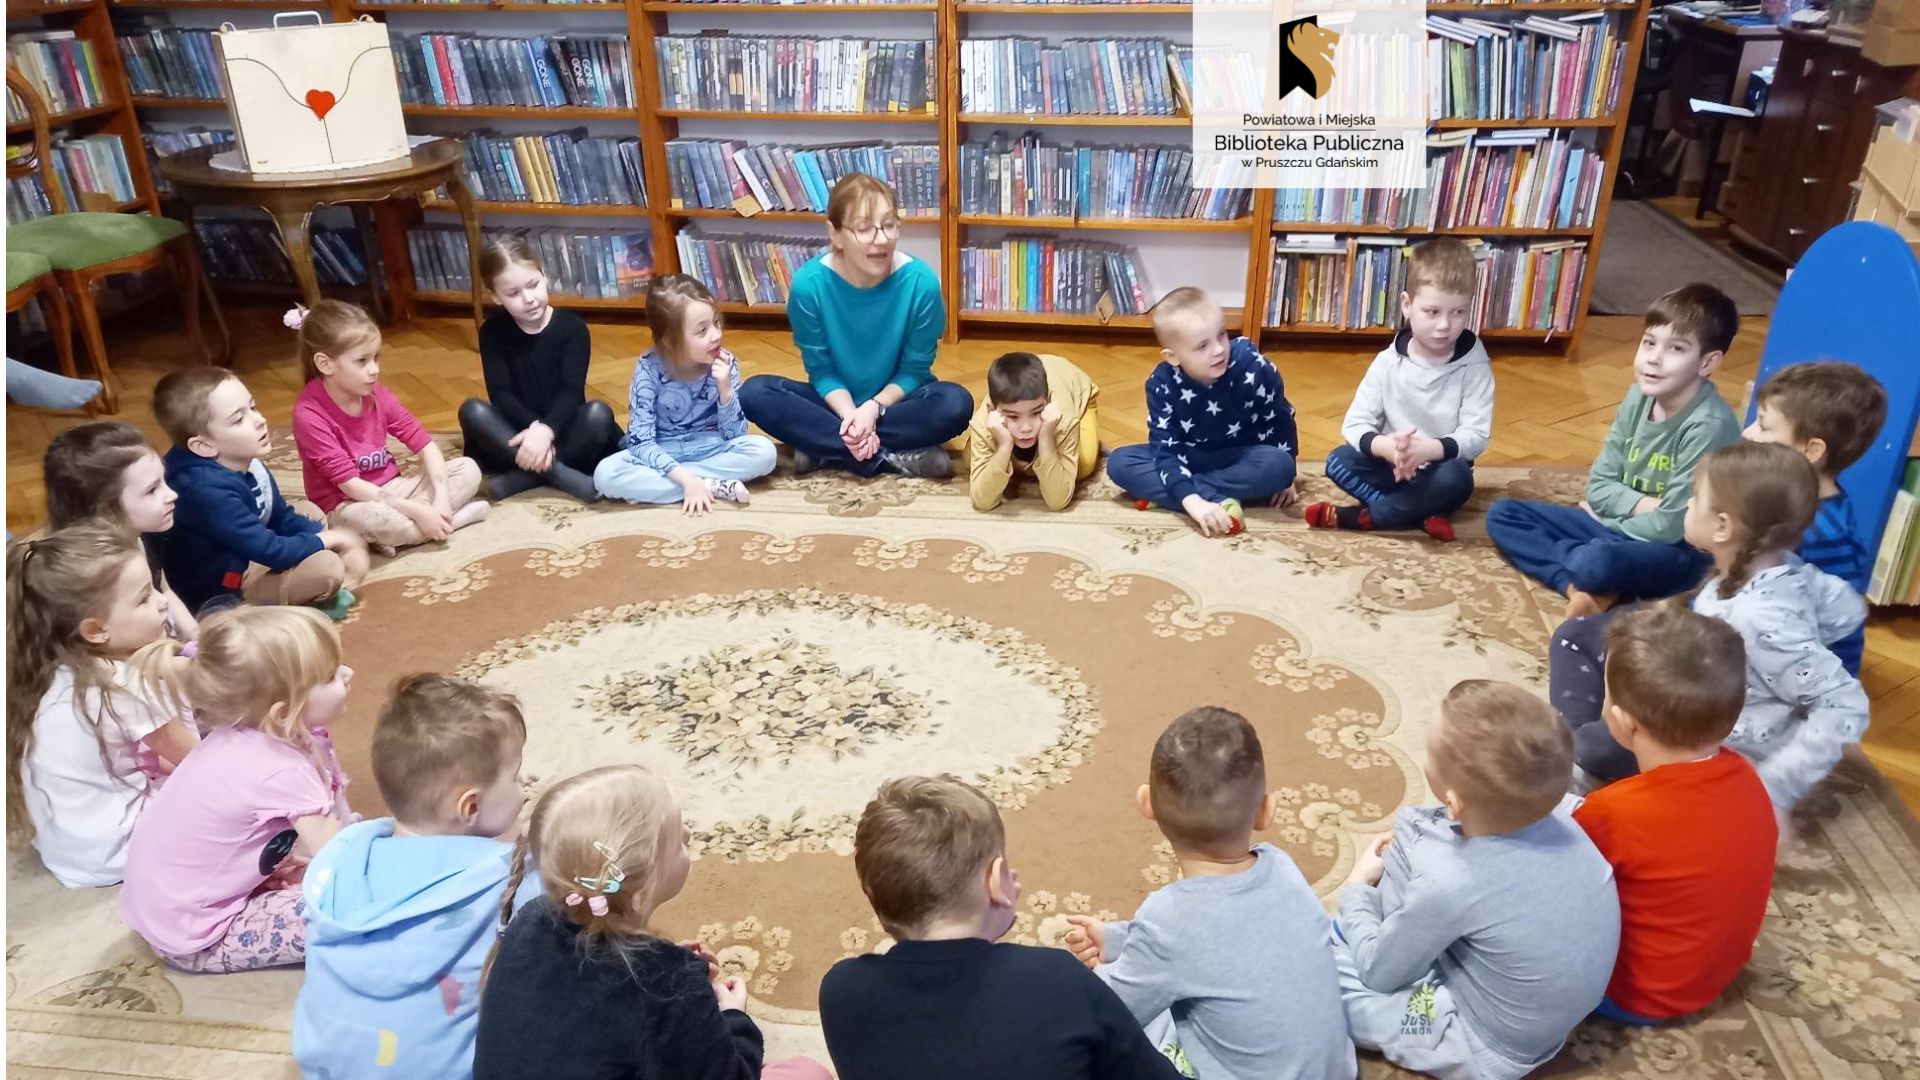 Na dywanie w kole siedzą po turecku dzieci. Pomiędzy nimi bibliotekarka. W rogu sali stoi okrągły brązowy stół a na nim drewniany teatrzyk.